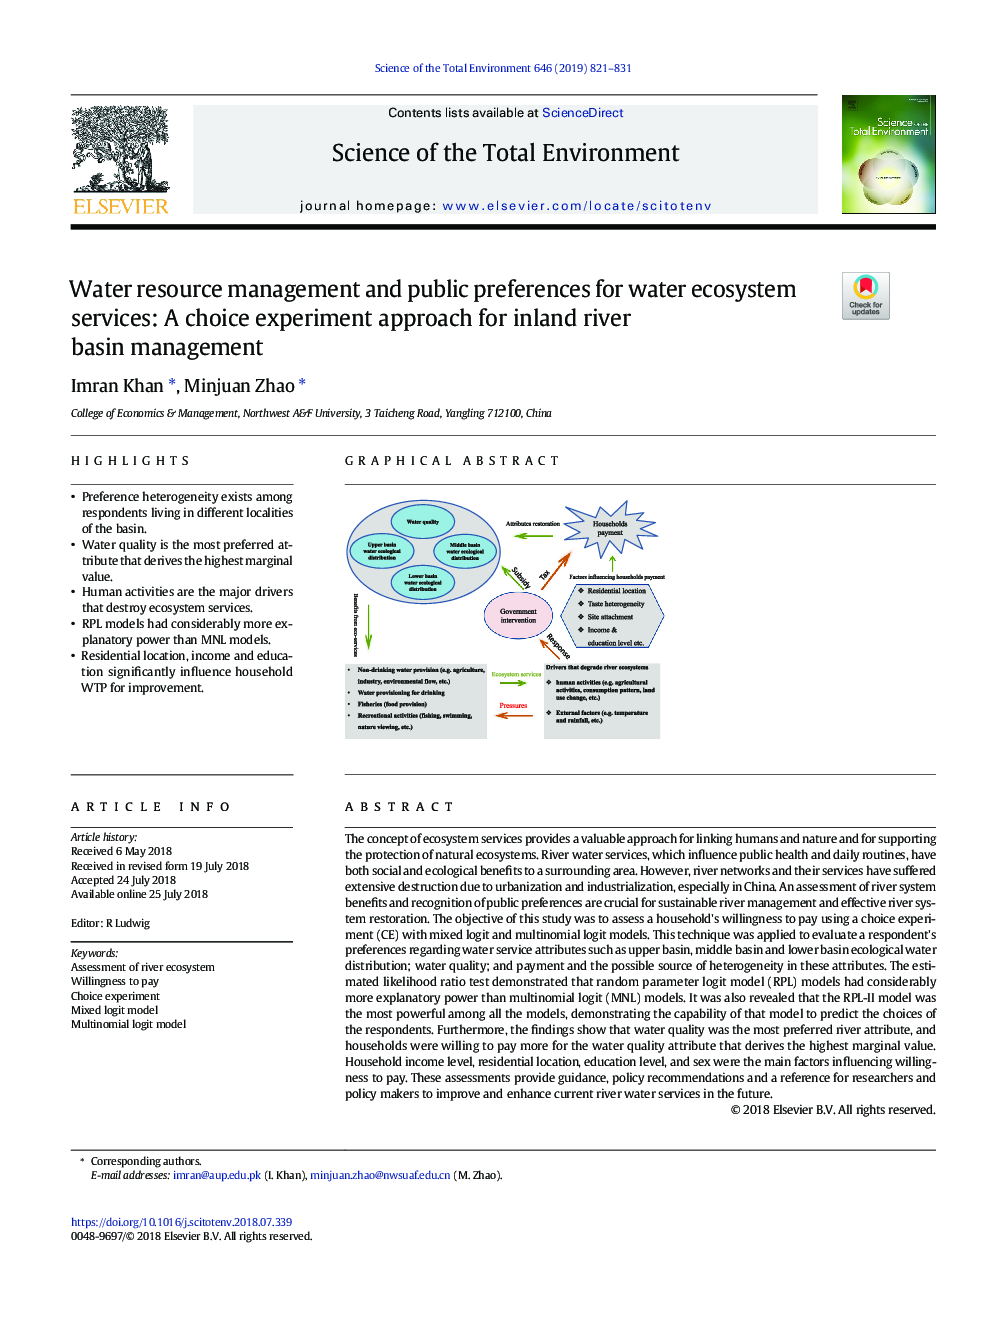 مدیریت منابع آب و تنظیمات عمومی برای خدمات اکوسیستم آب: یک روش آزمایشی انتخاب برای مدیریت حوضه رودخانه داخلی